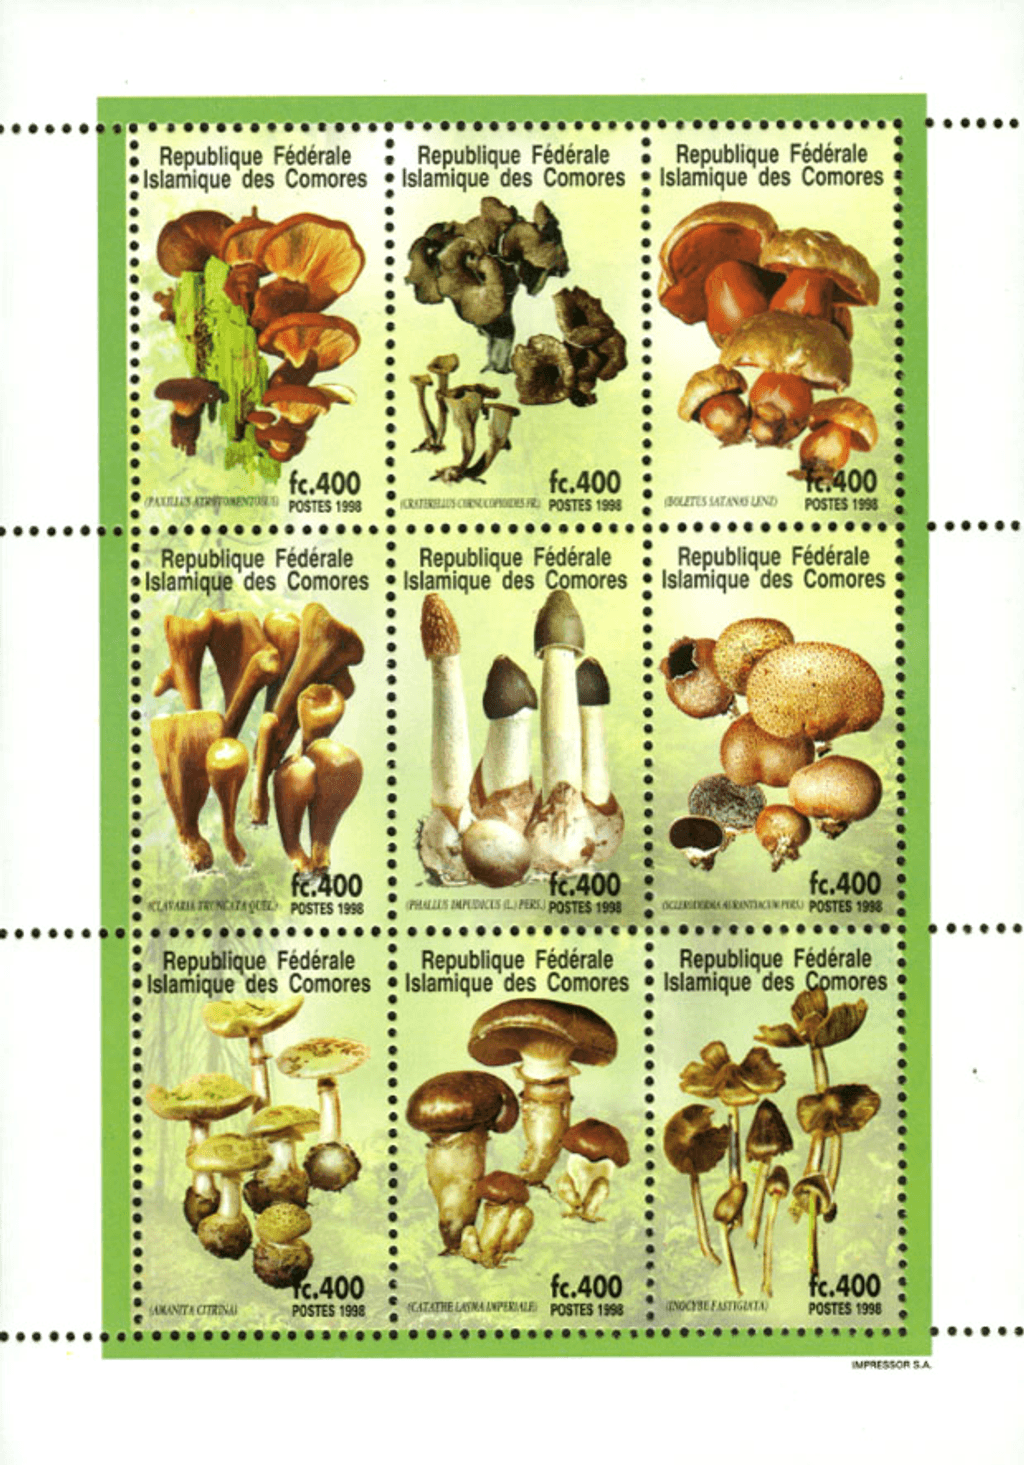 Mushrooms (5649)